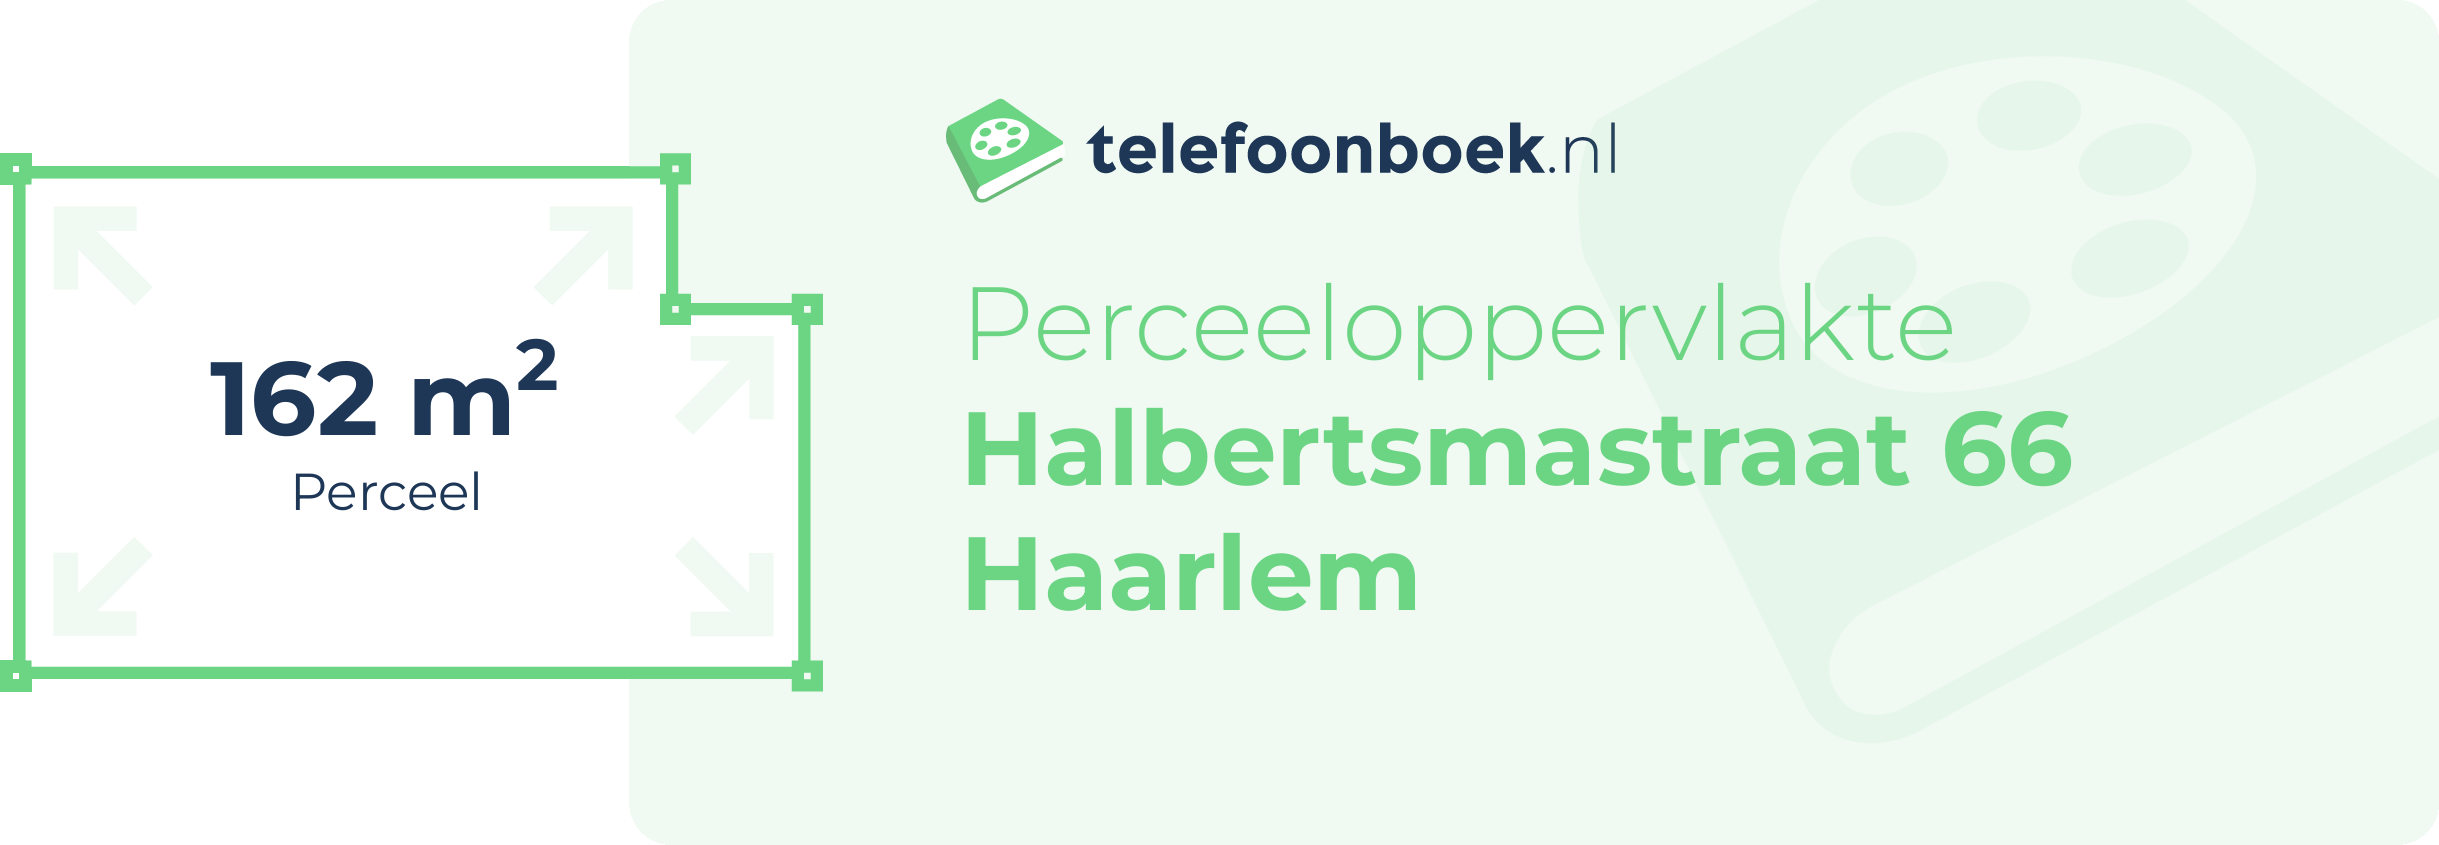 Perceeloppervlakte Halbertsmastraat 66 Haarlem